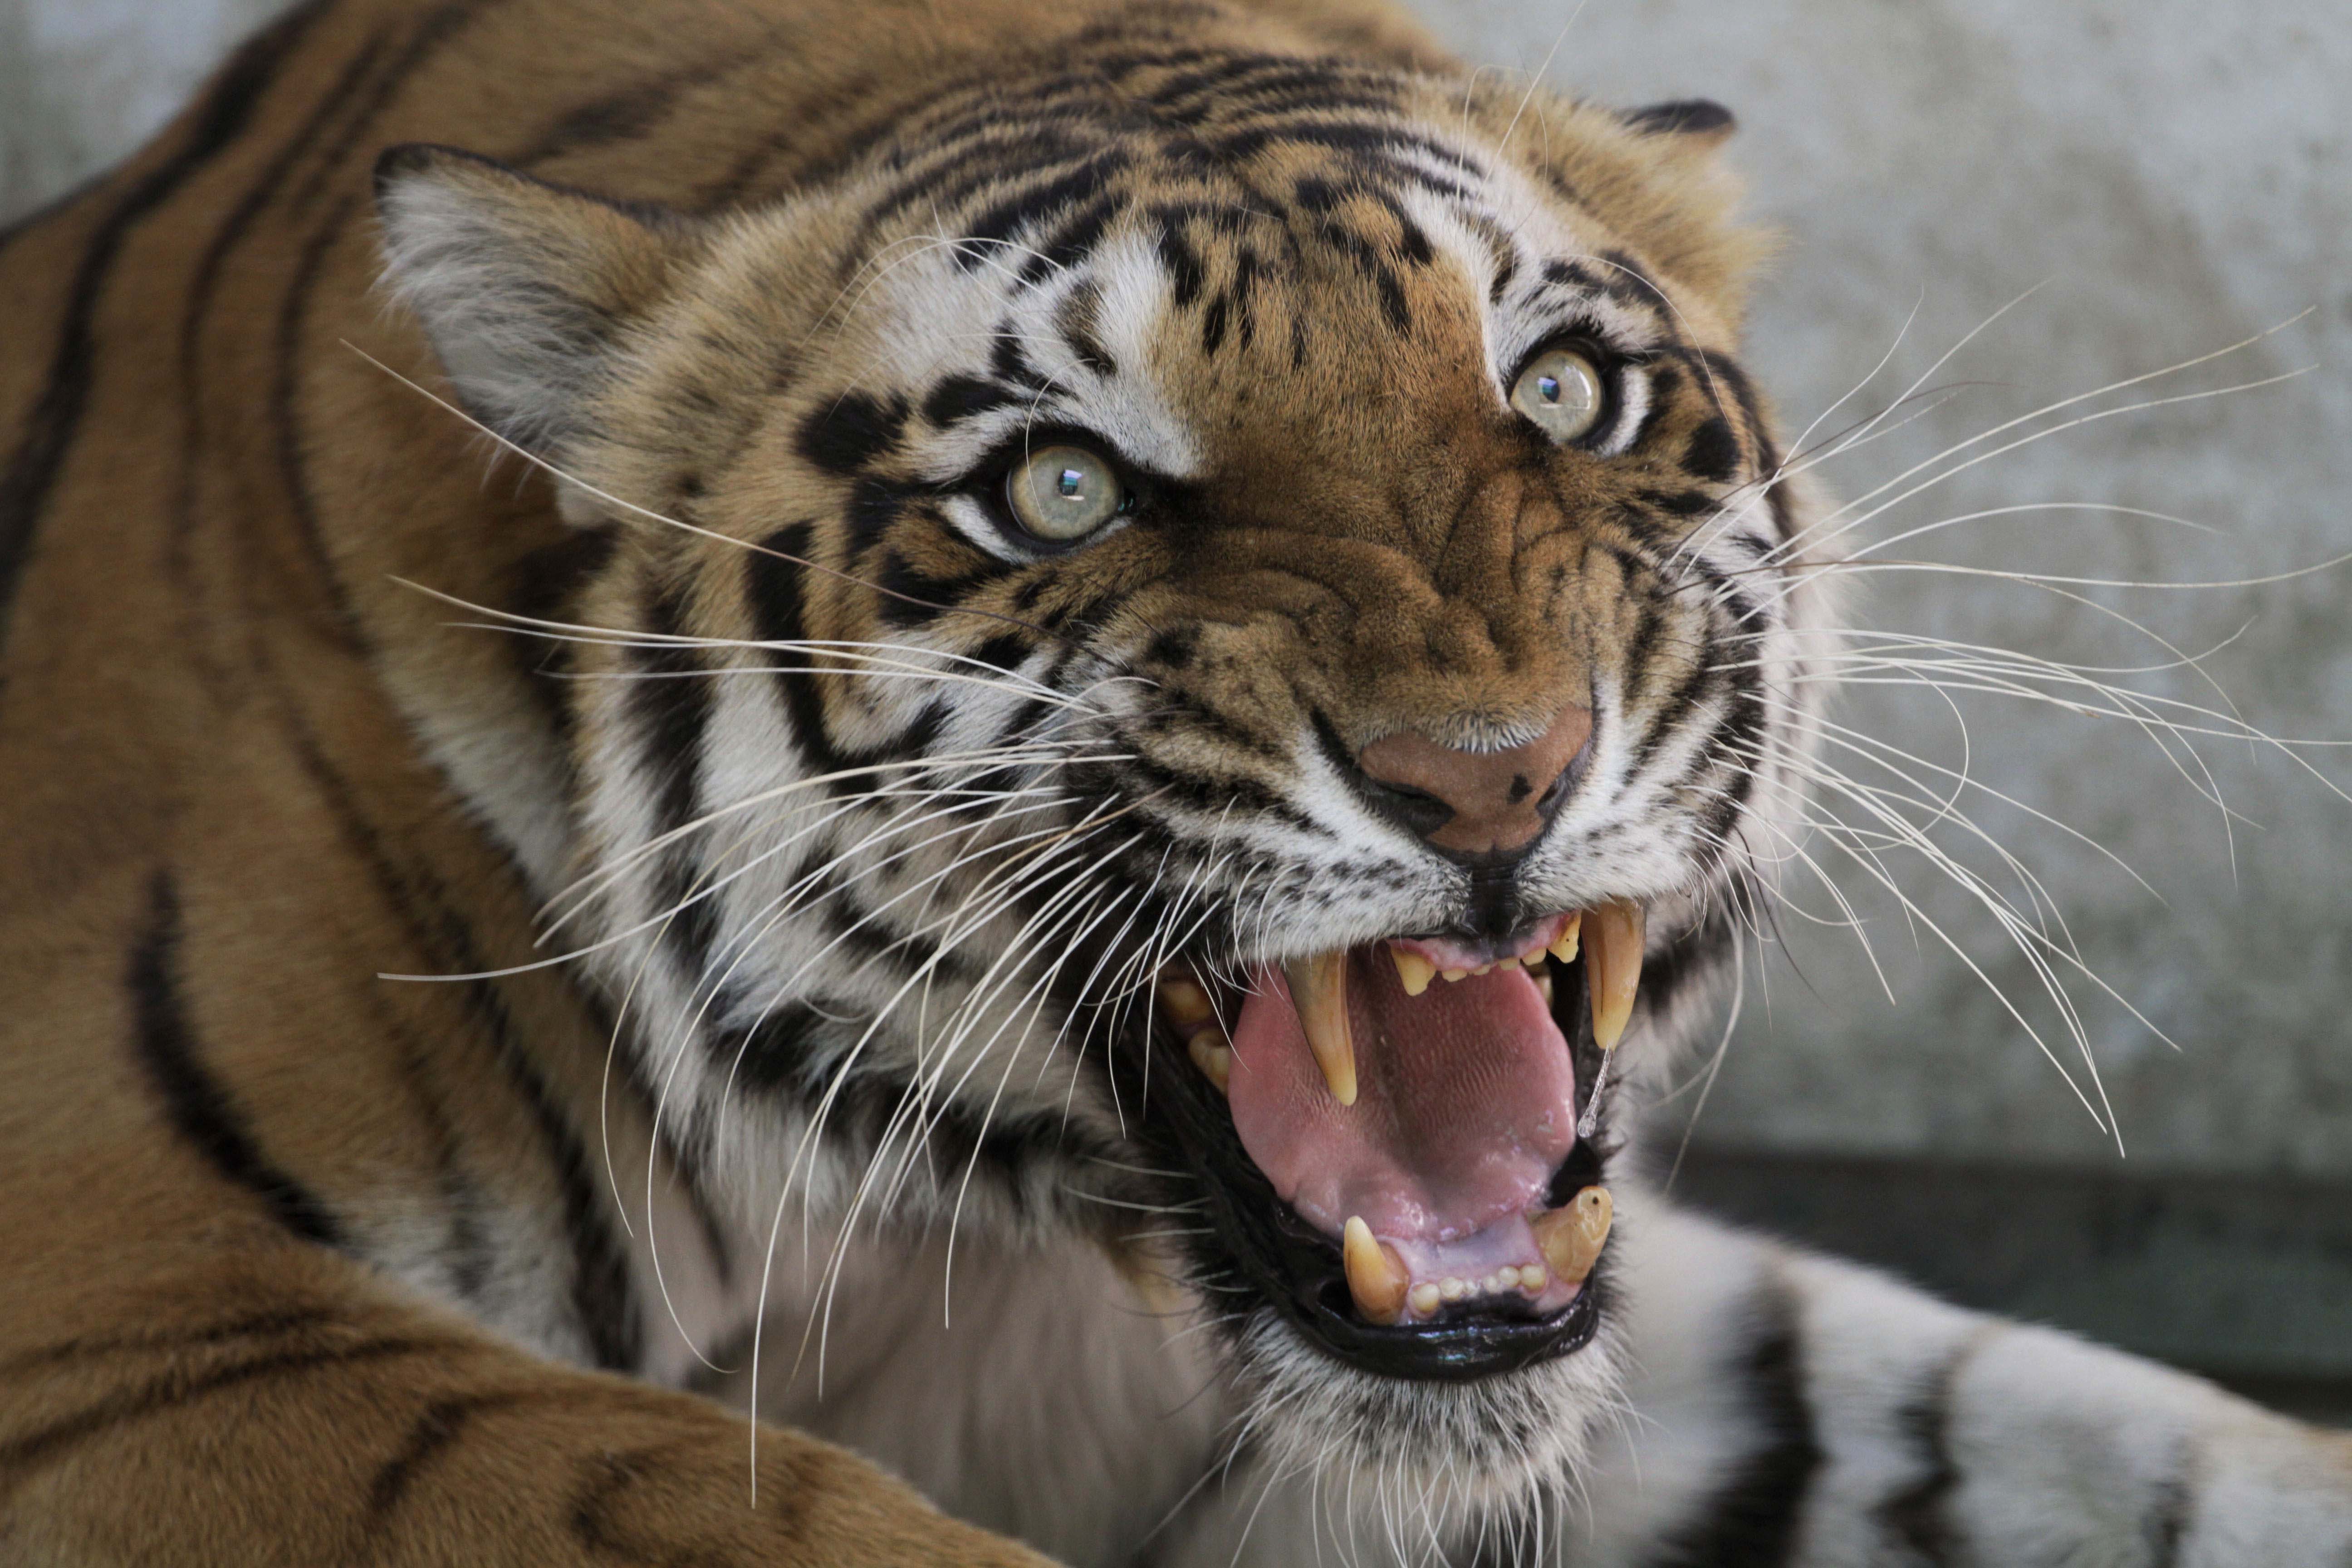 Cuidador de un zoo chino que vendía "vino de tigre" muere atacado por felino